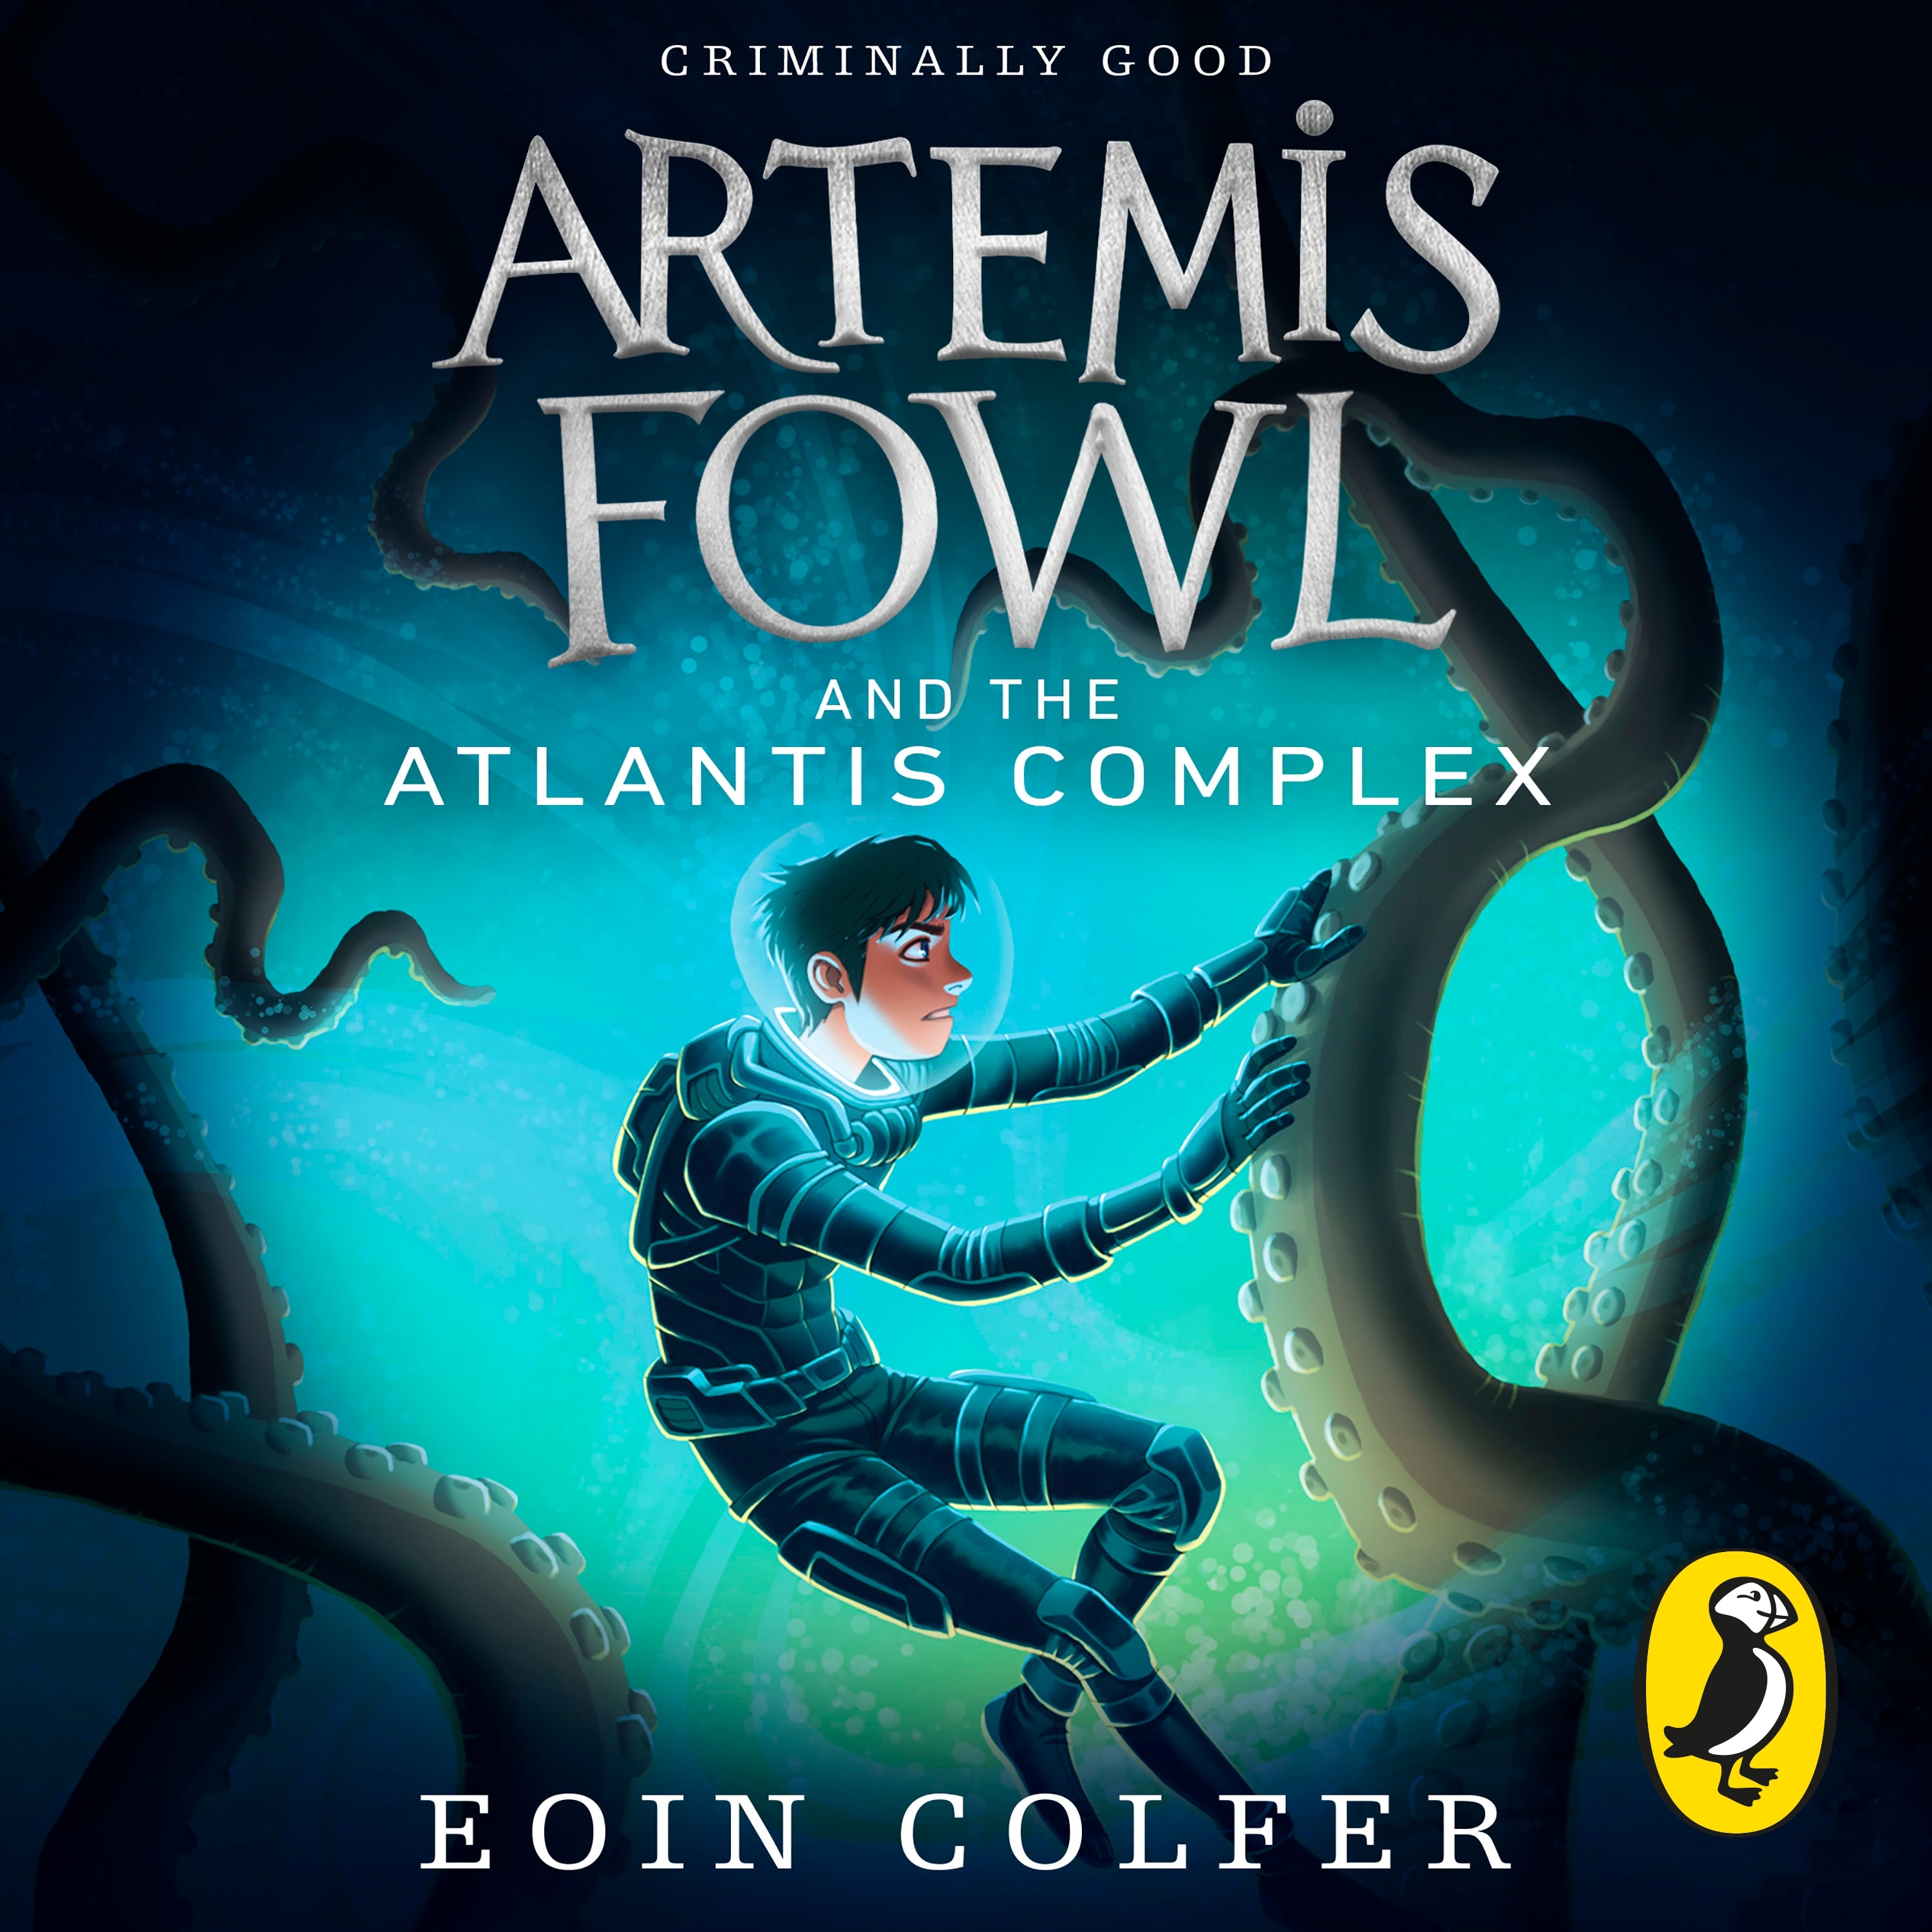 Artemis Fowl 2 - Uma Aventura No Artico - 9788501064240